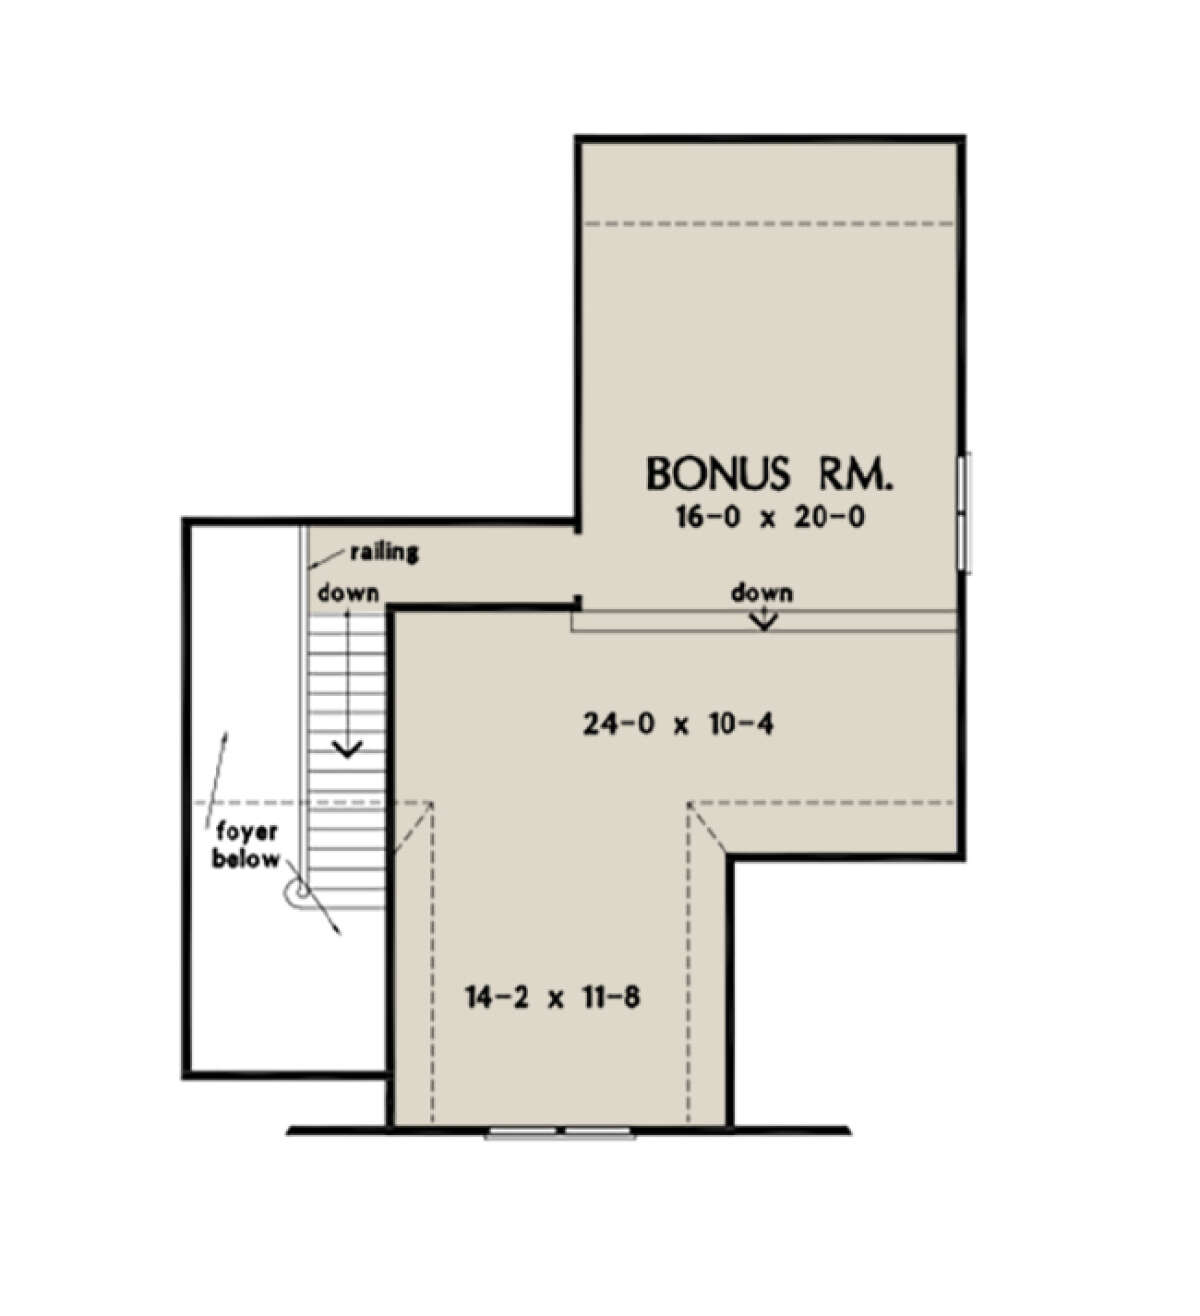 Bonus Room for House Plan #2865-00208